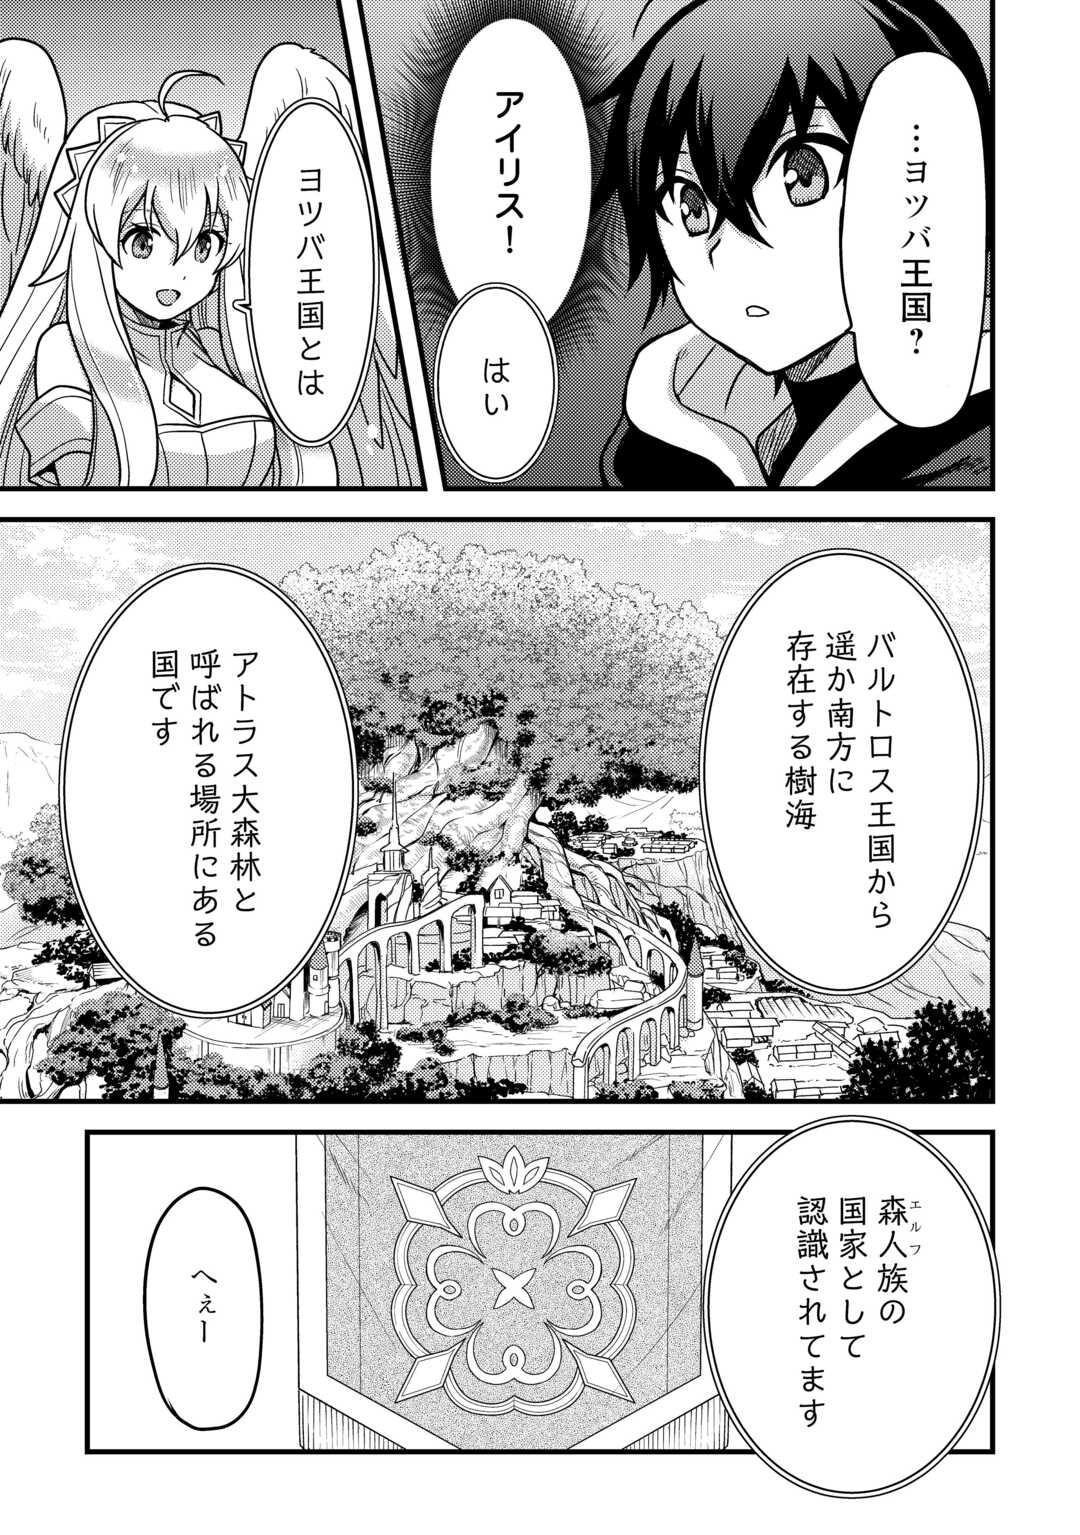 Fuguushoku to Baka ni Saremashita ga, Jissai wa Sorehodo Waruku Arimasen? - Chapter 40 - Page 4